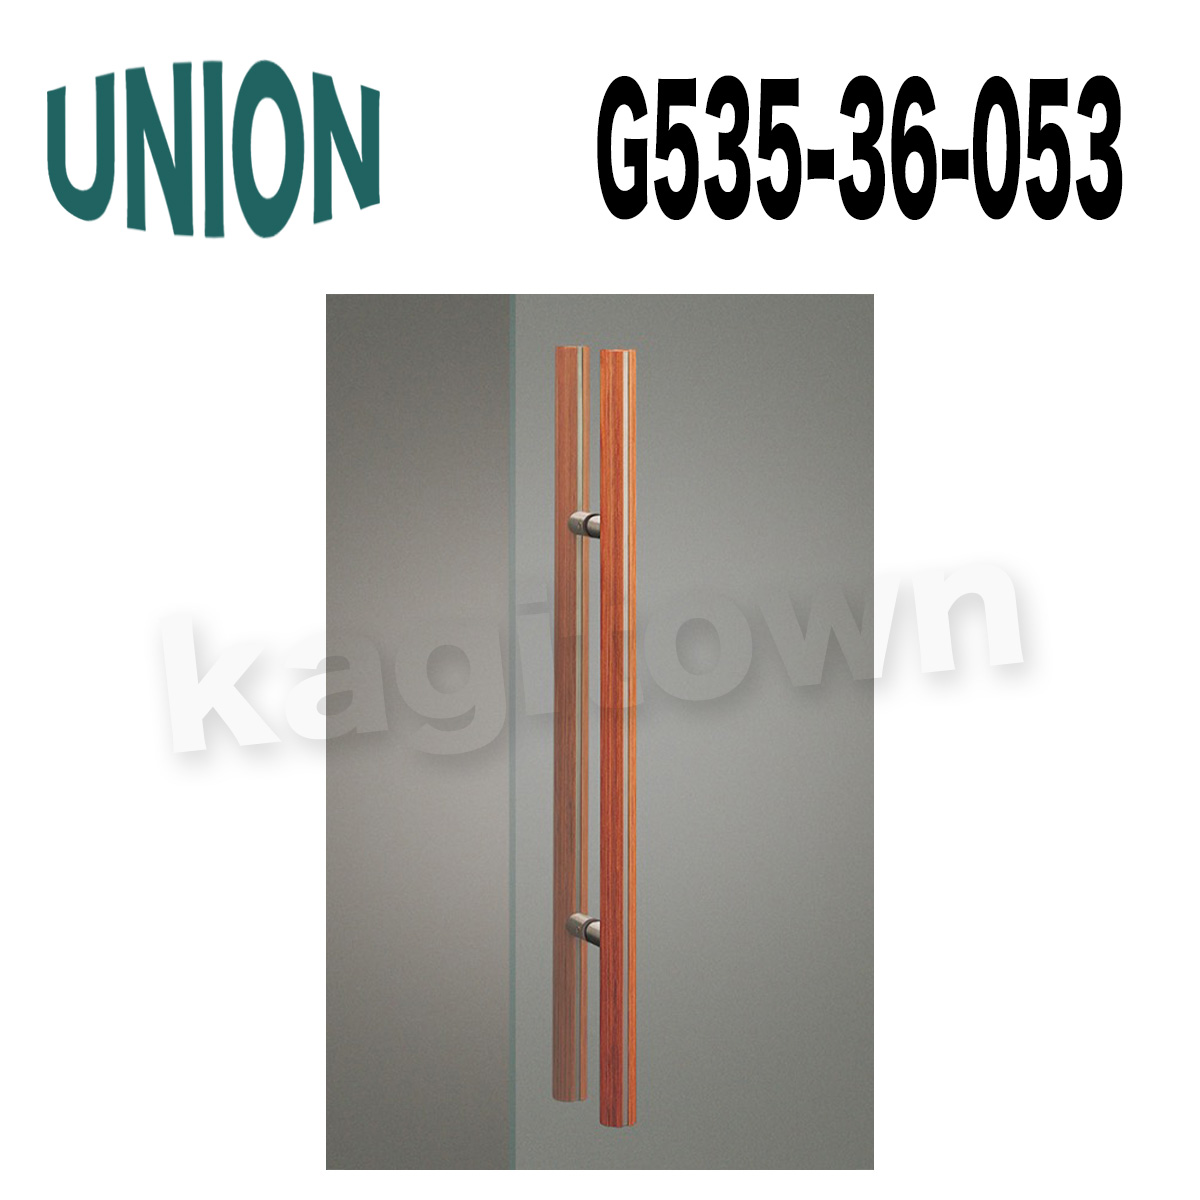 UNION【ユニオン】G535-36-053[ドアハンドル] 押し棒（内外）